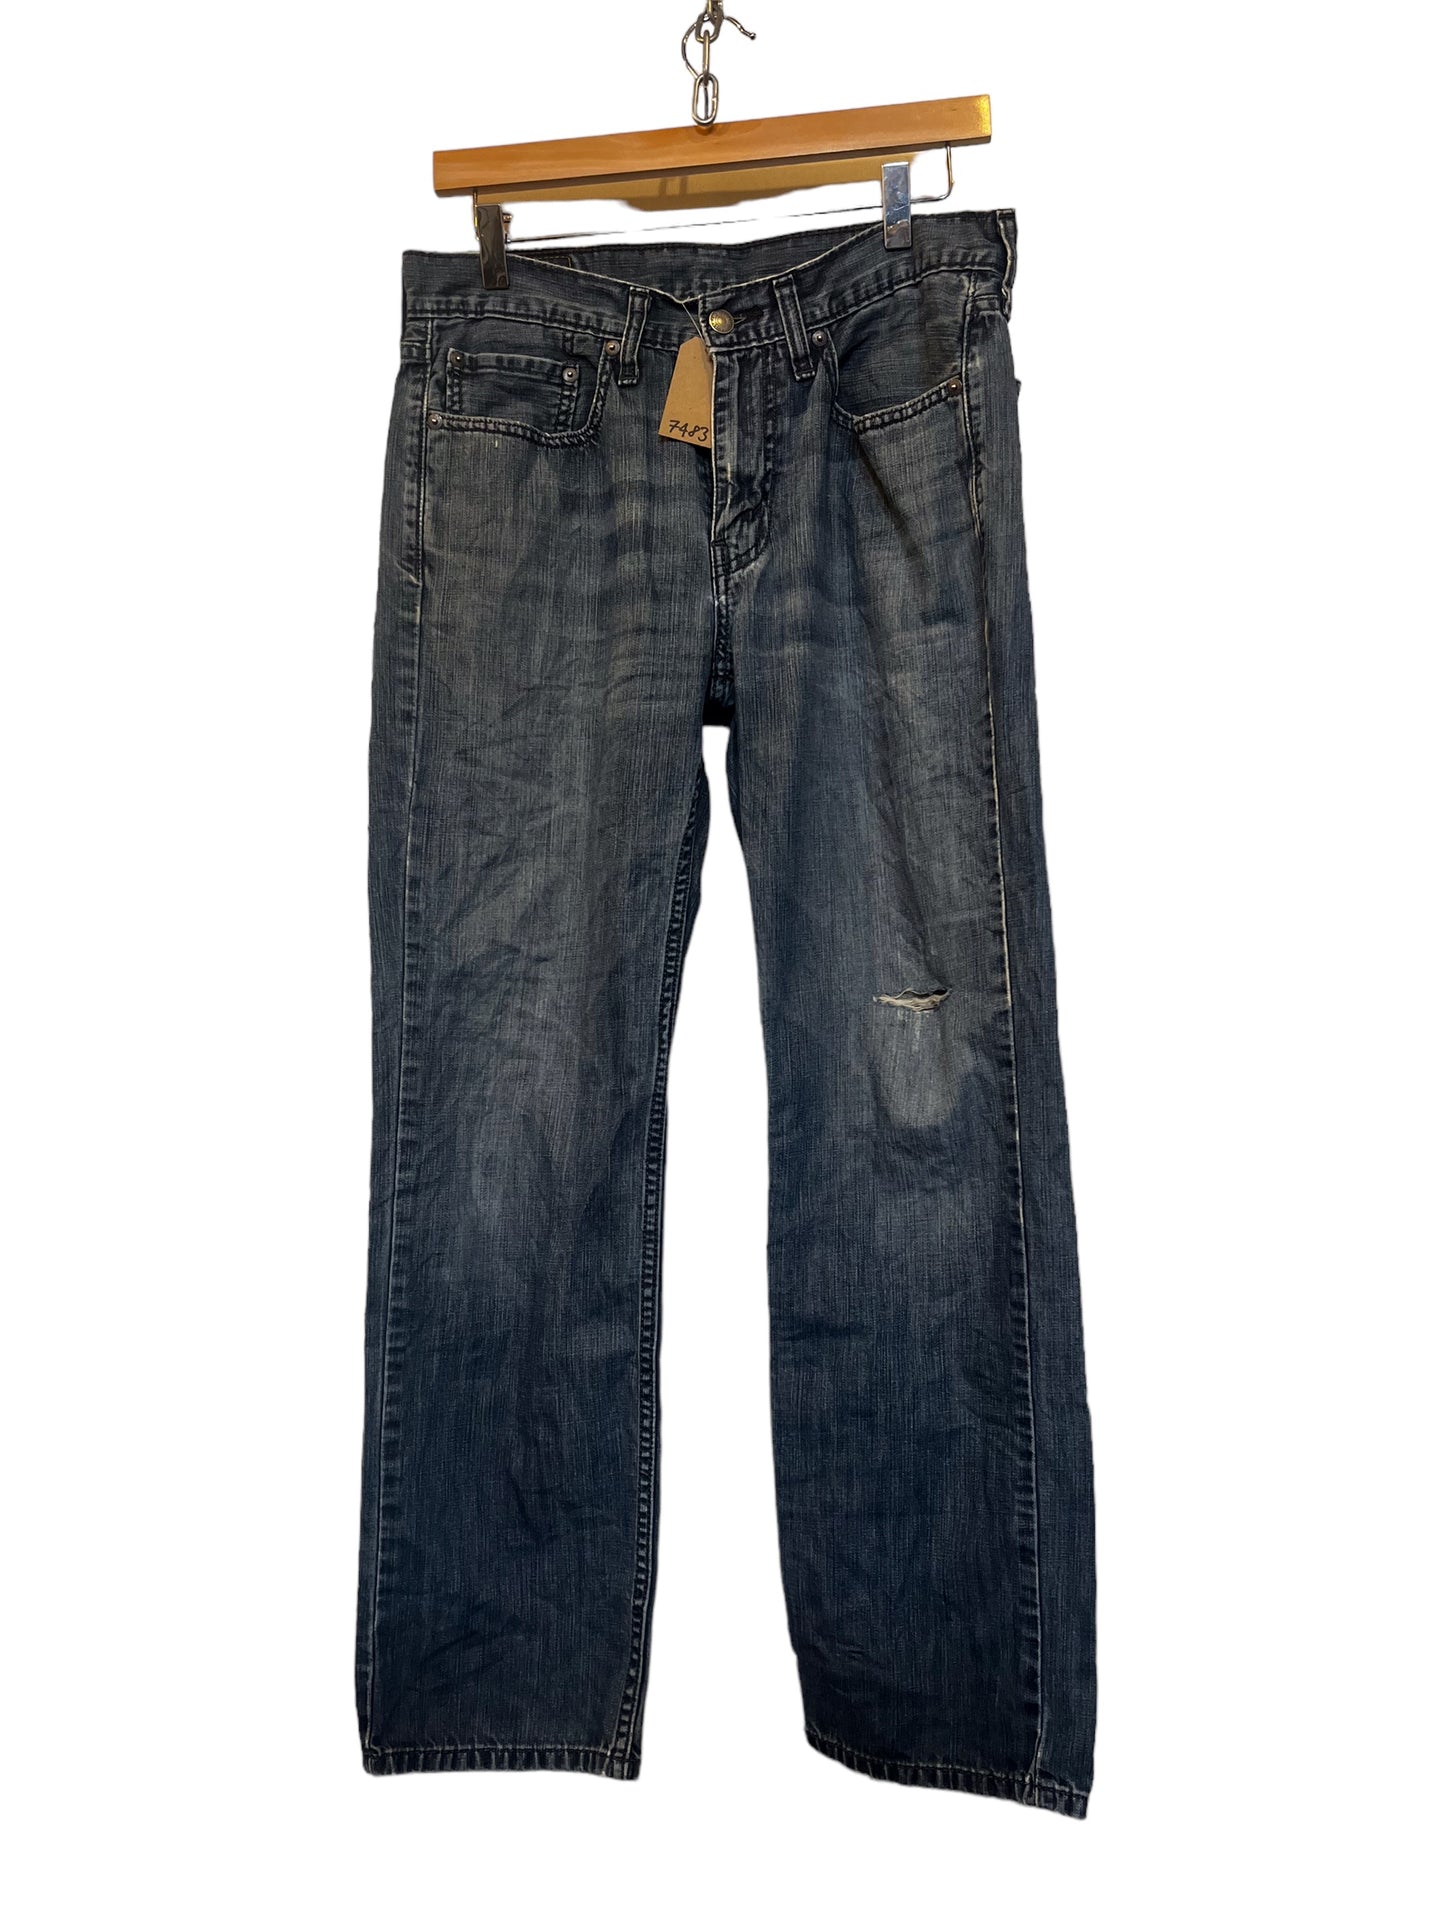 Levi 514 jeans (31x30)